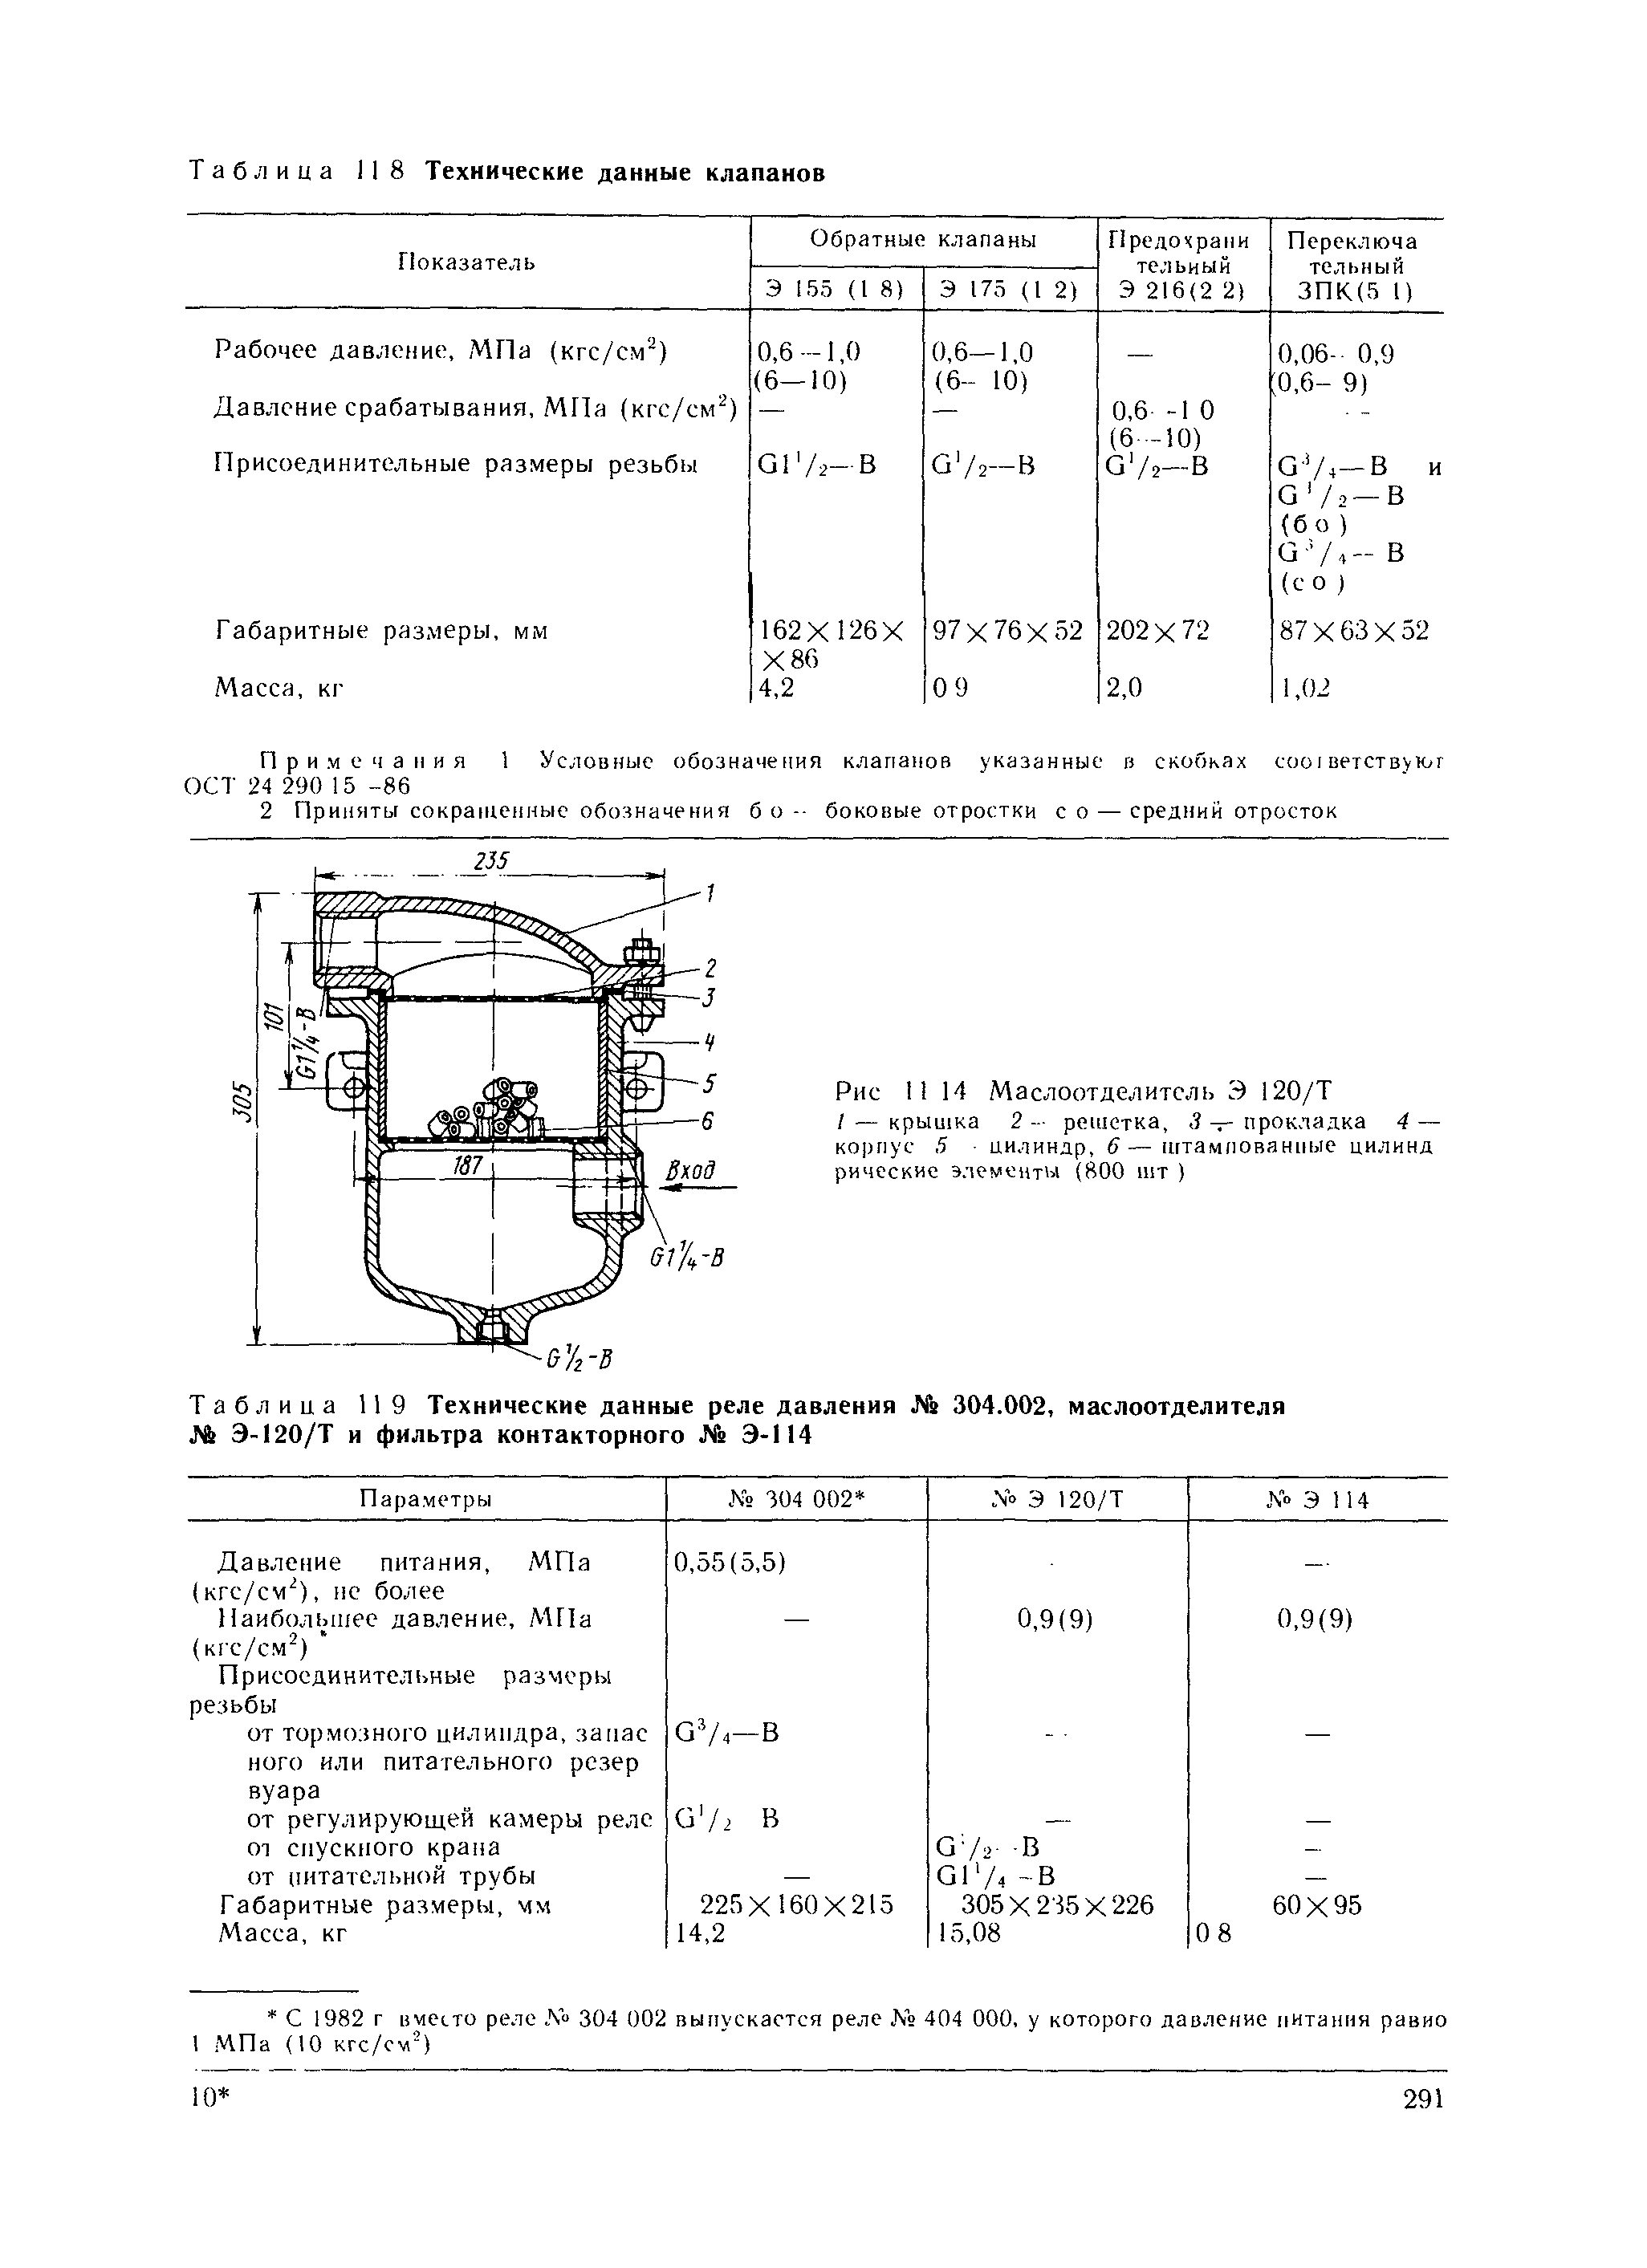 Таблица 119 Технические данные реле давления Яг 304.002, маслоотделителя № Э-120/Т и фильтра контакторного № Э-114
